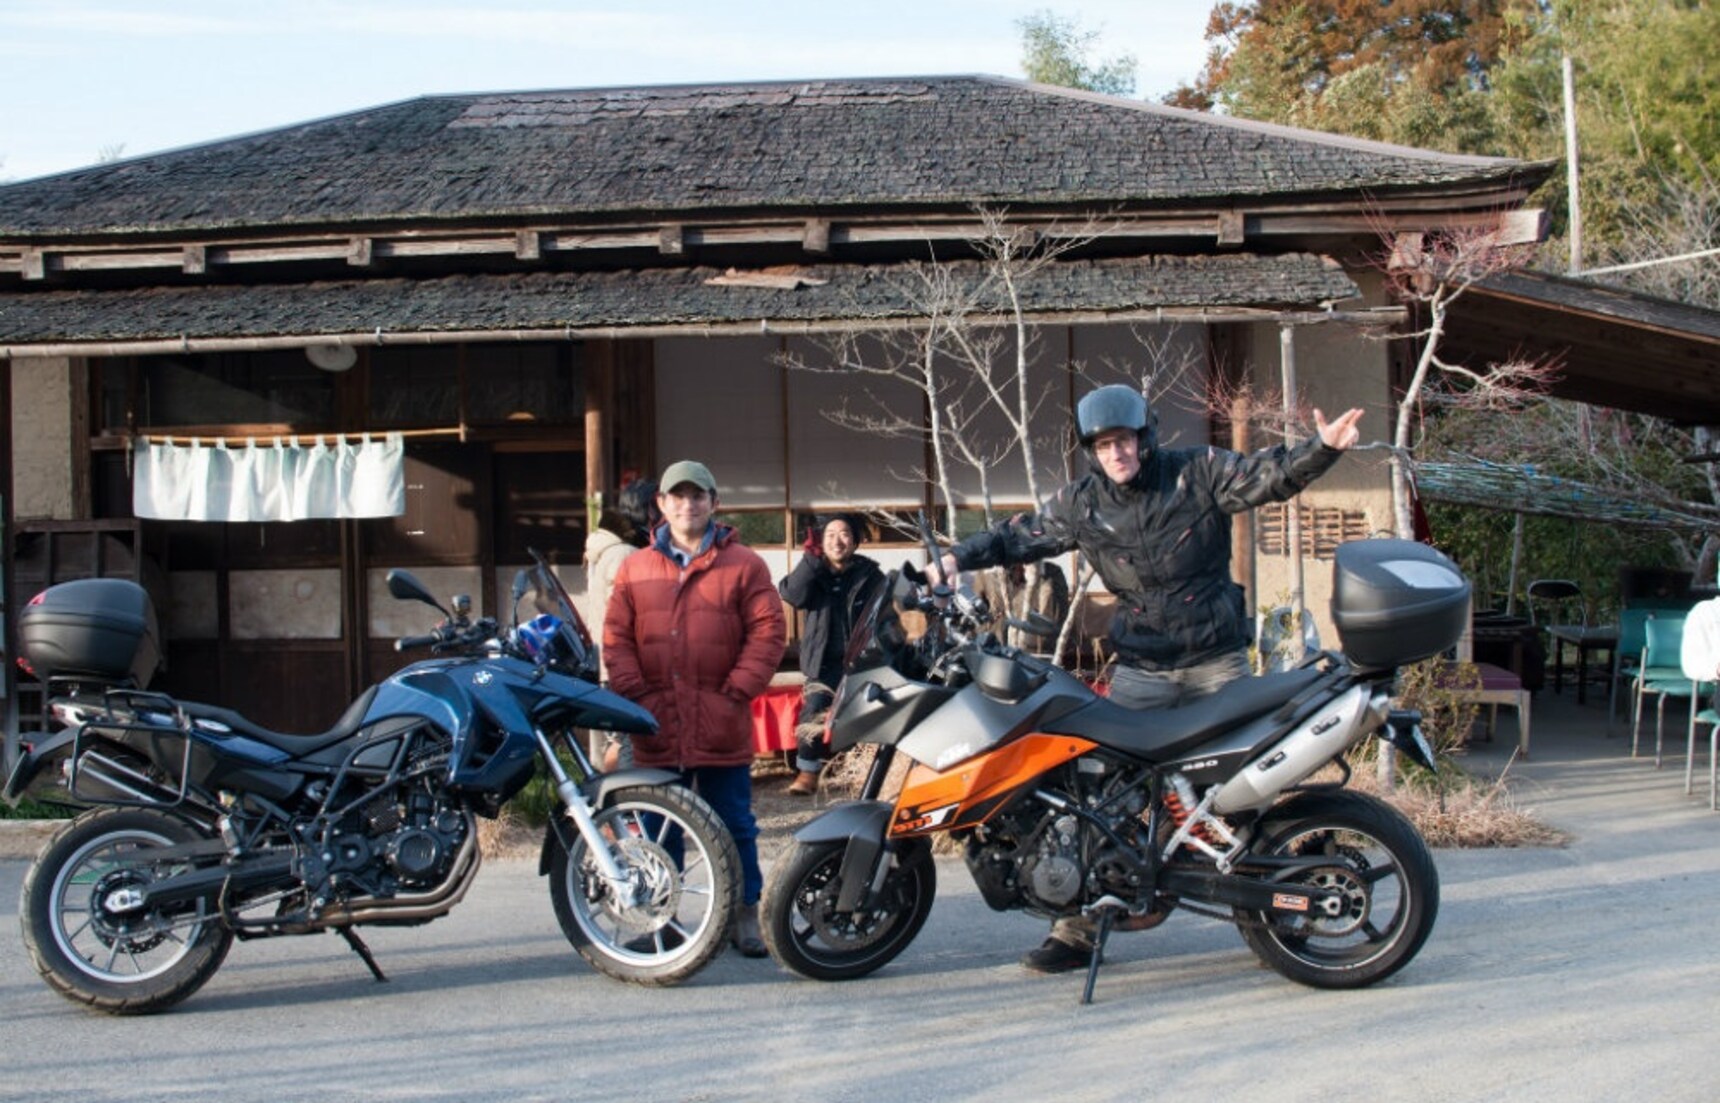 騎著摩托車吃遍千葉三大拉麵店